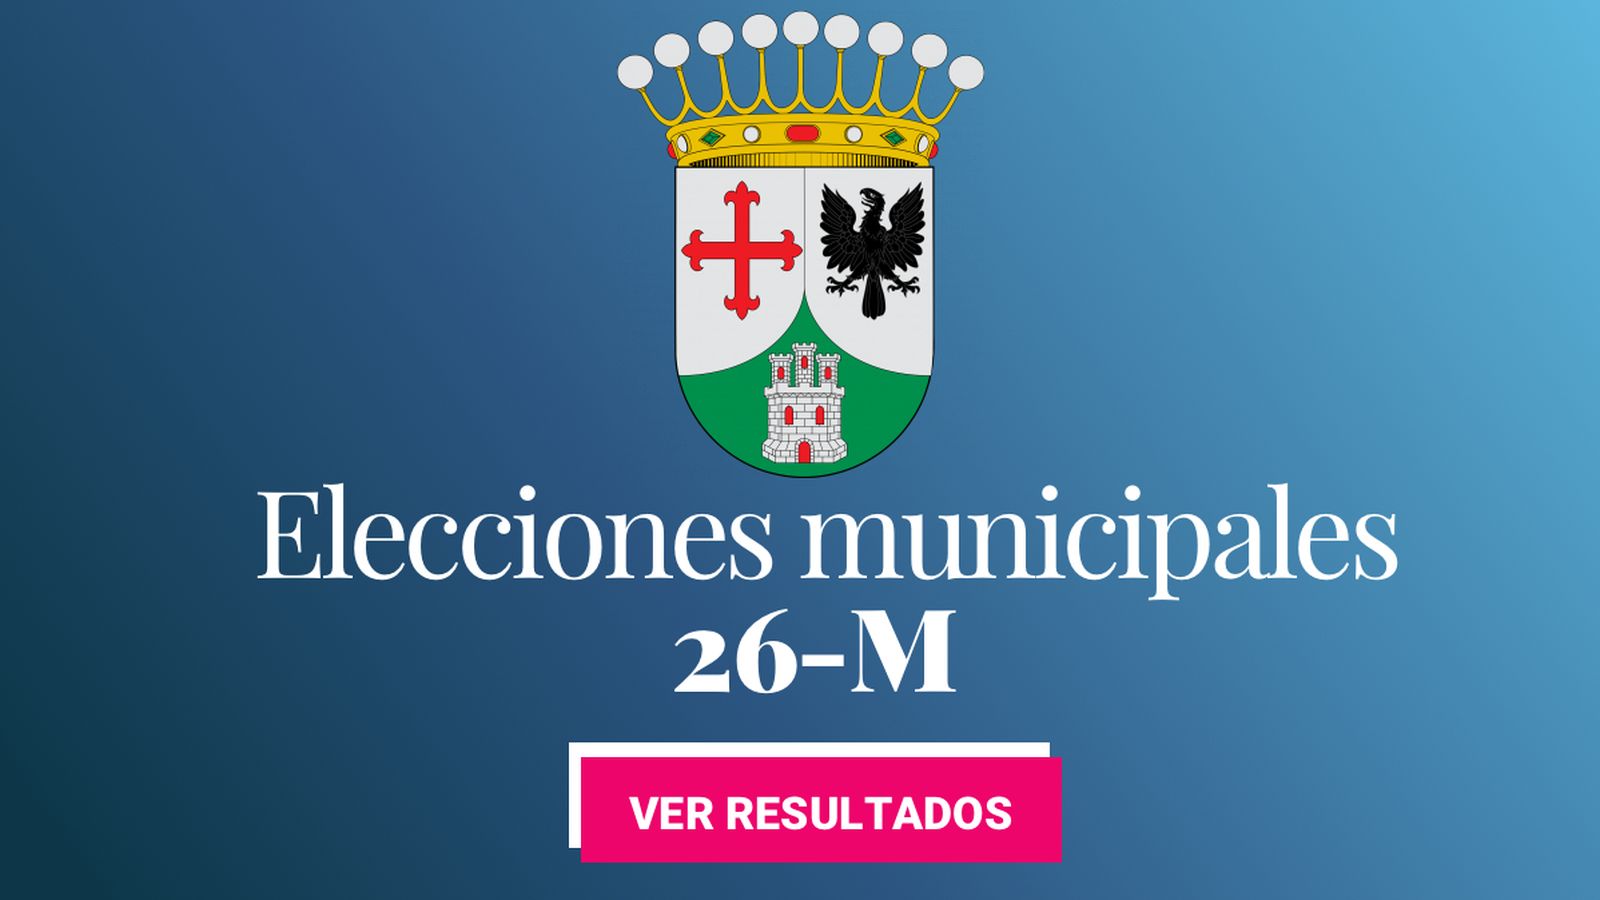 Foto: Elecciones municipales 2019 en Alcobendas. (C.C./EC)